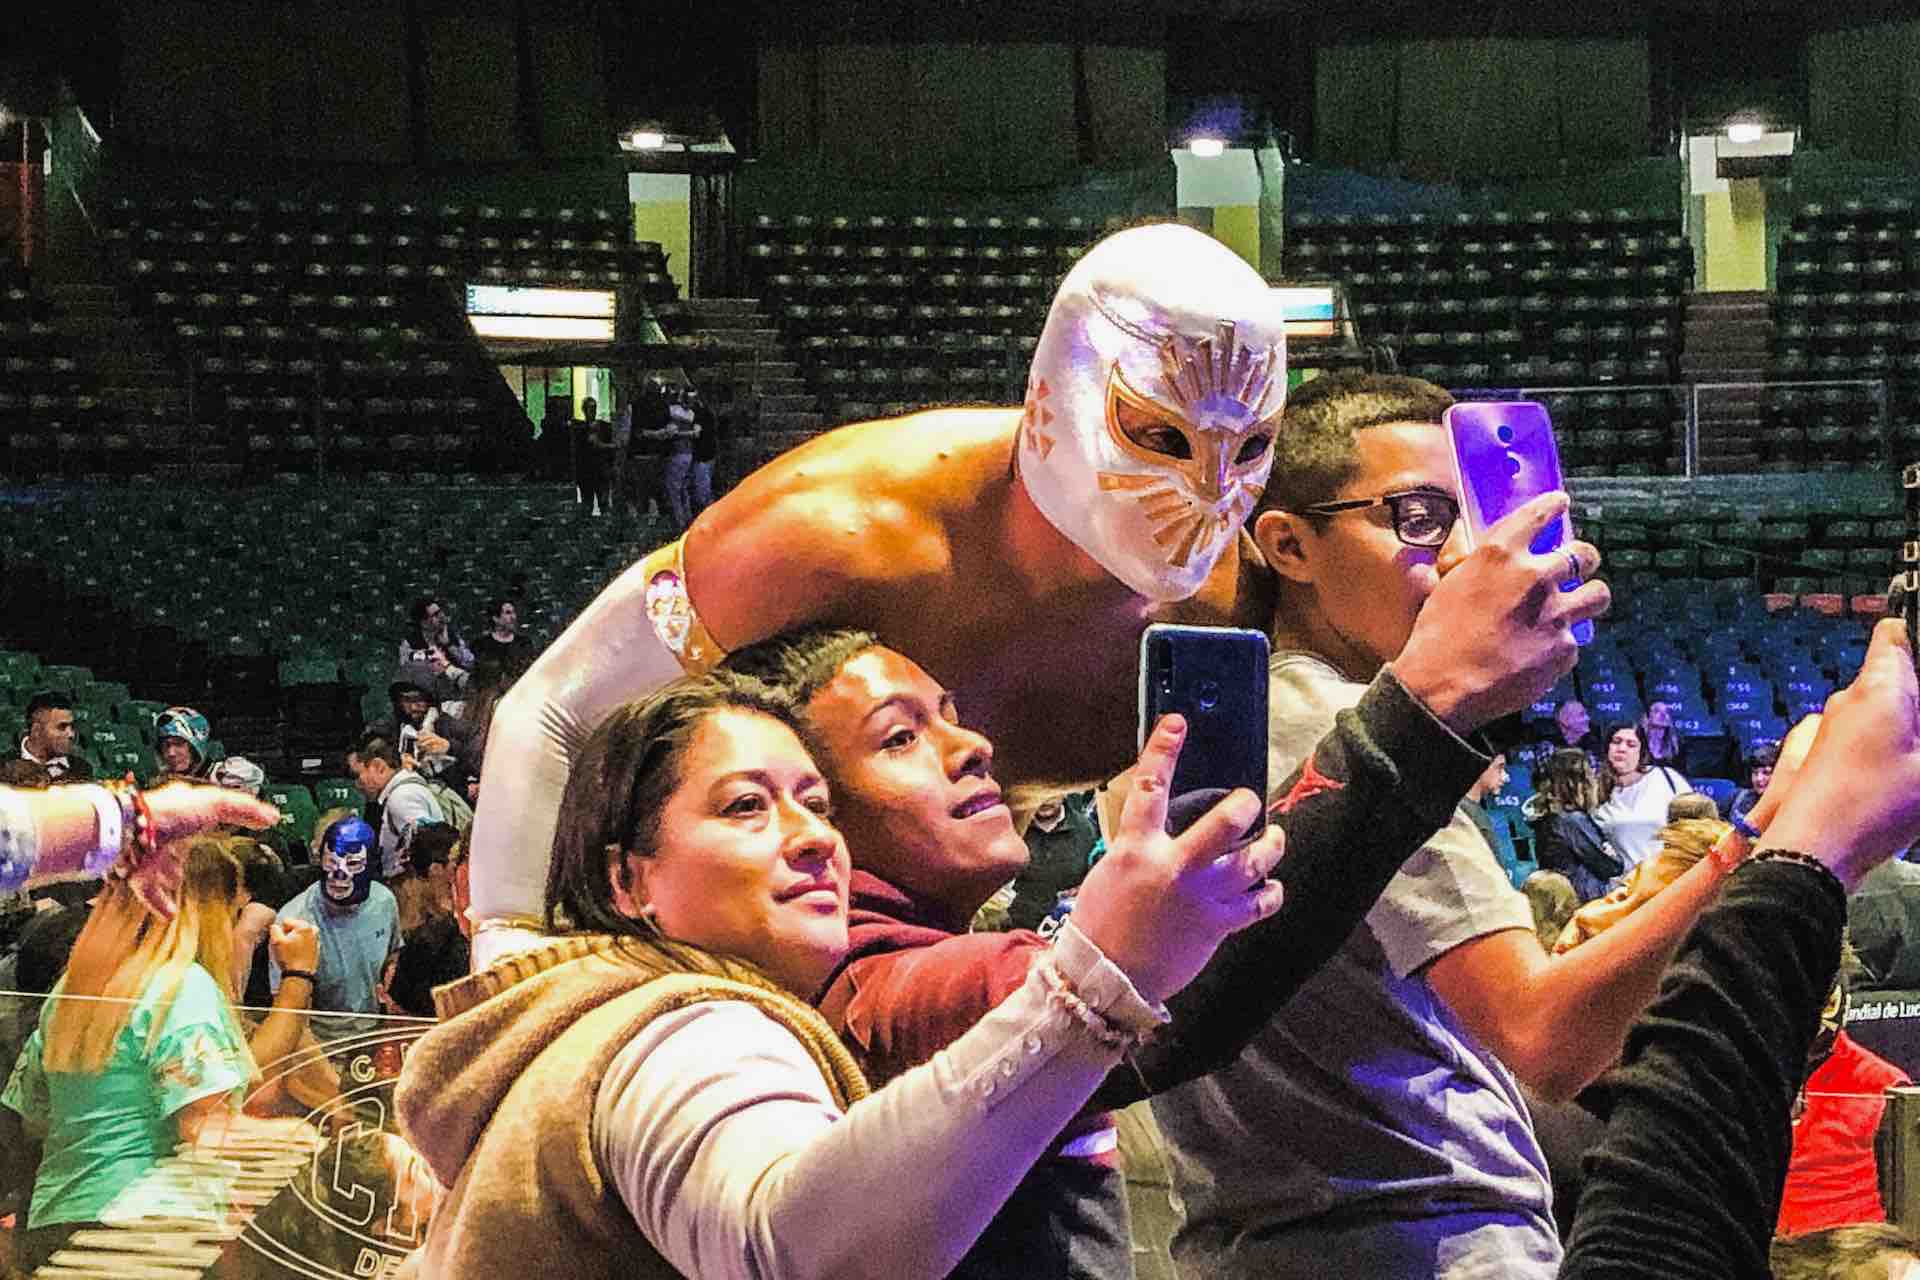 Lucha Libre Mexico City wrestler with fans